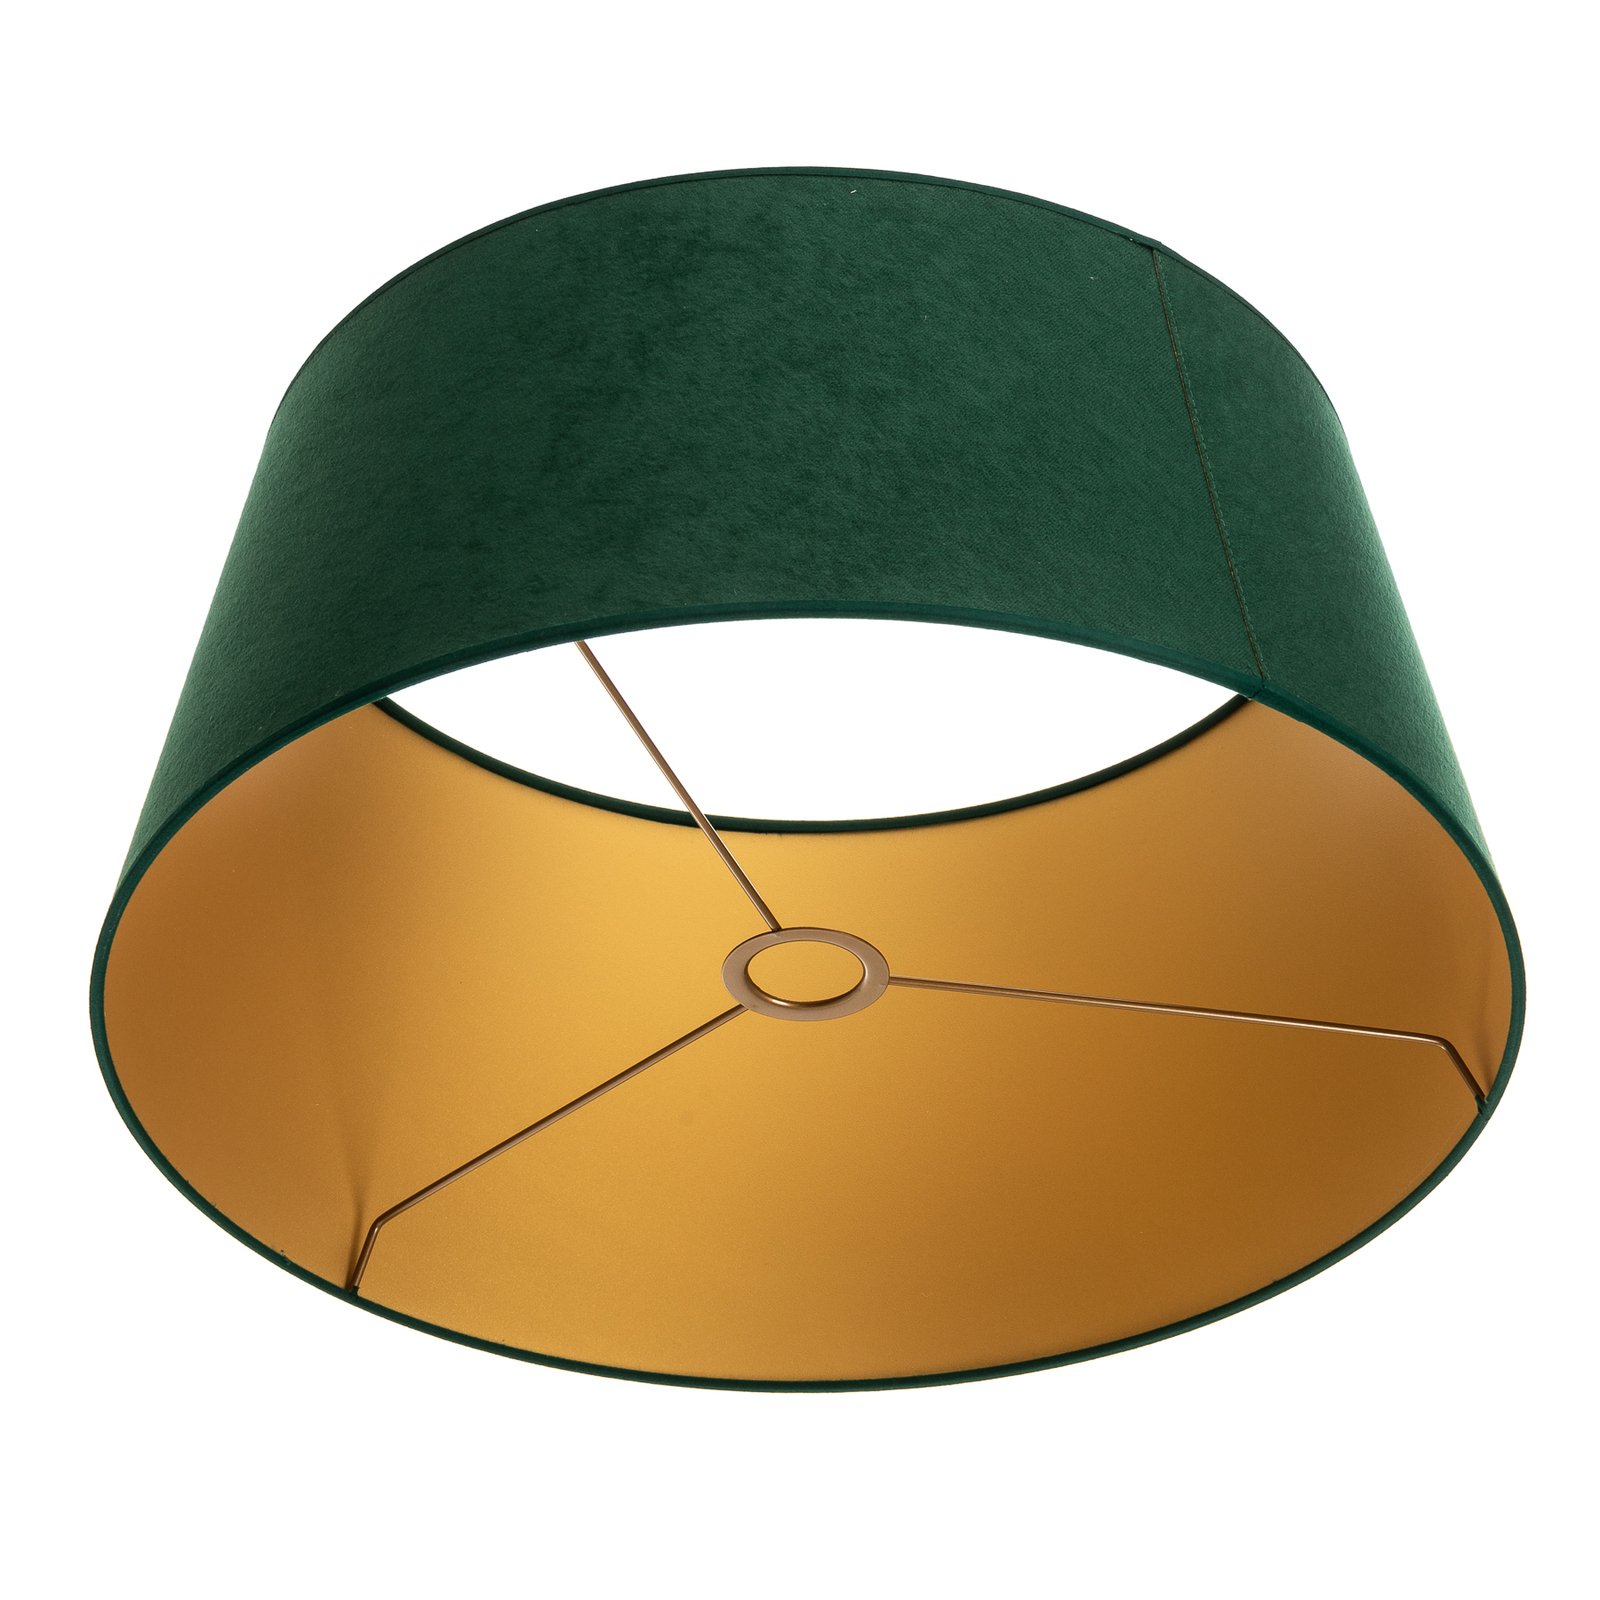 Lampskärm Cone höjd 25,5 cm, mörkgrön/guld